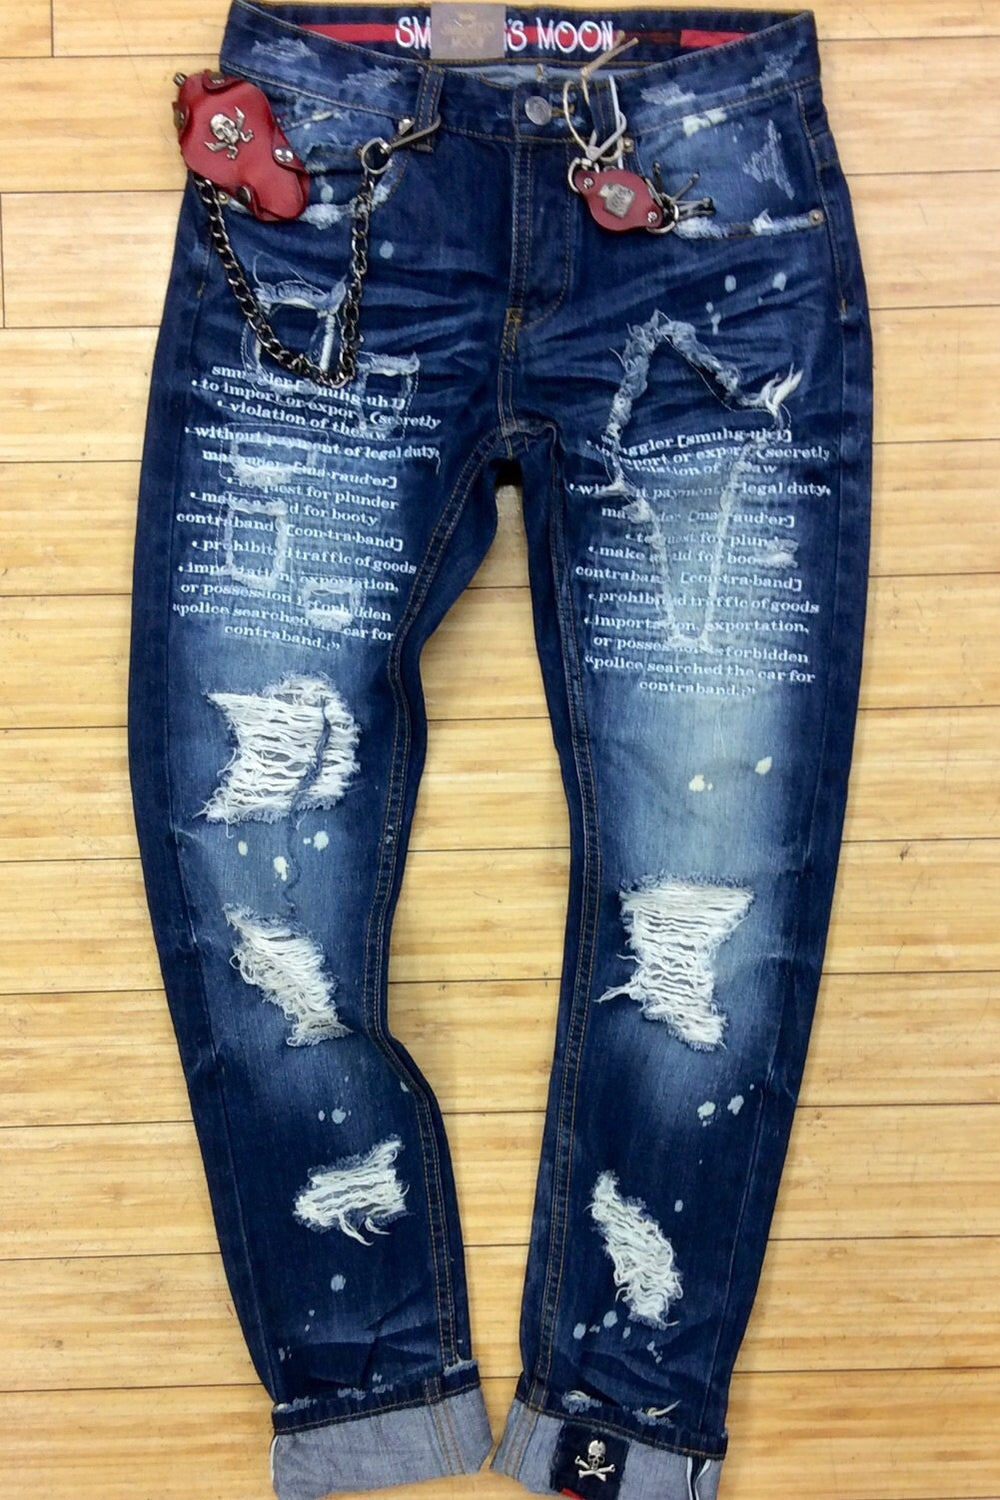 Smuggler-indigo woven jeans